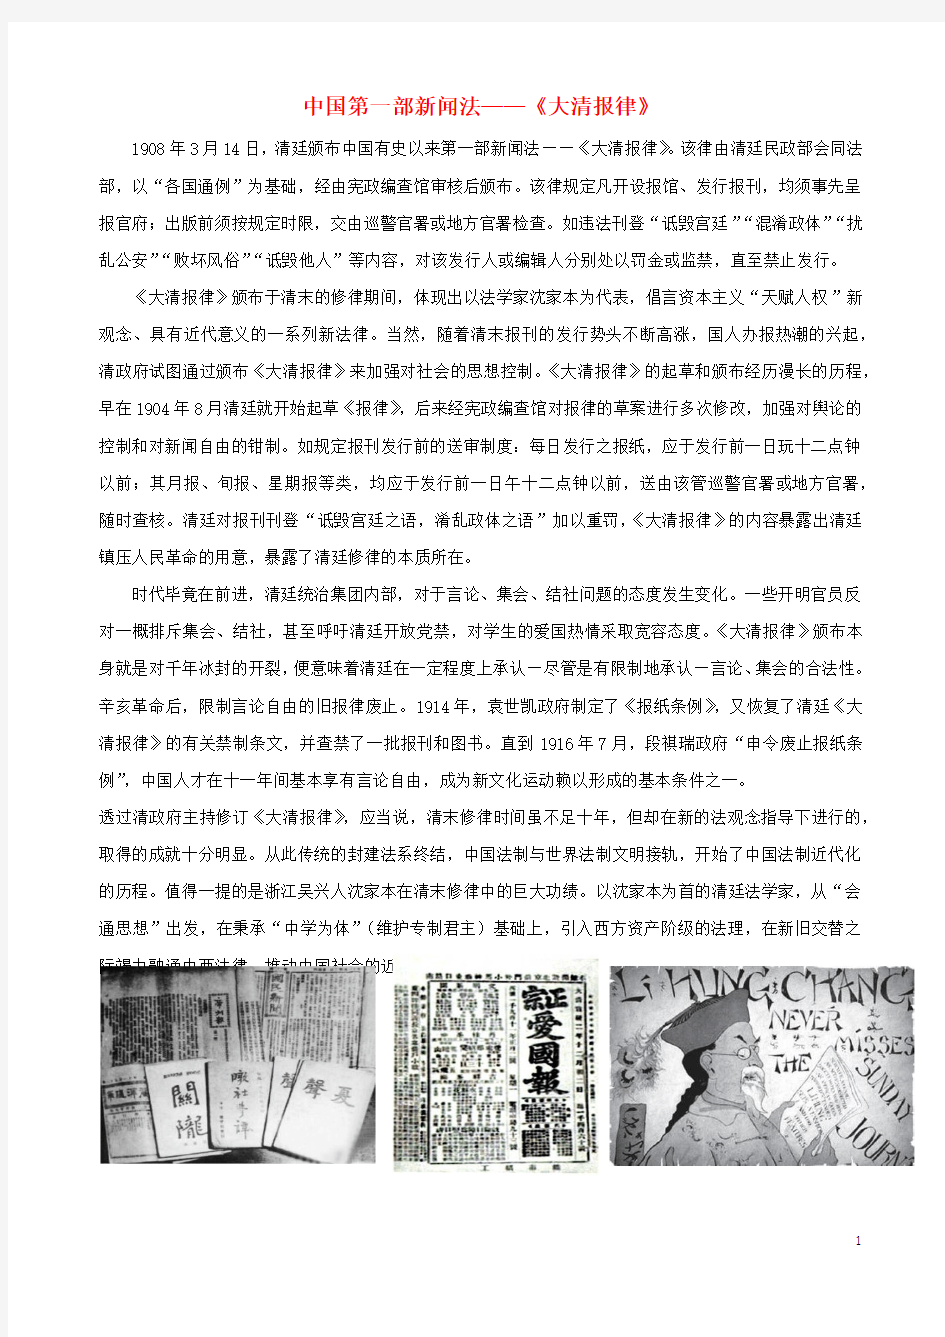 初中历史知识中国第一部新闻法—《大清报律》素材